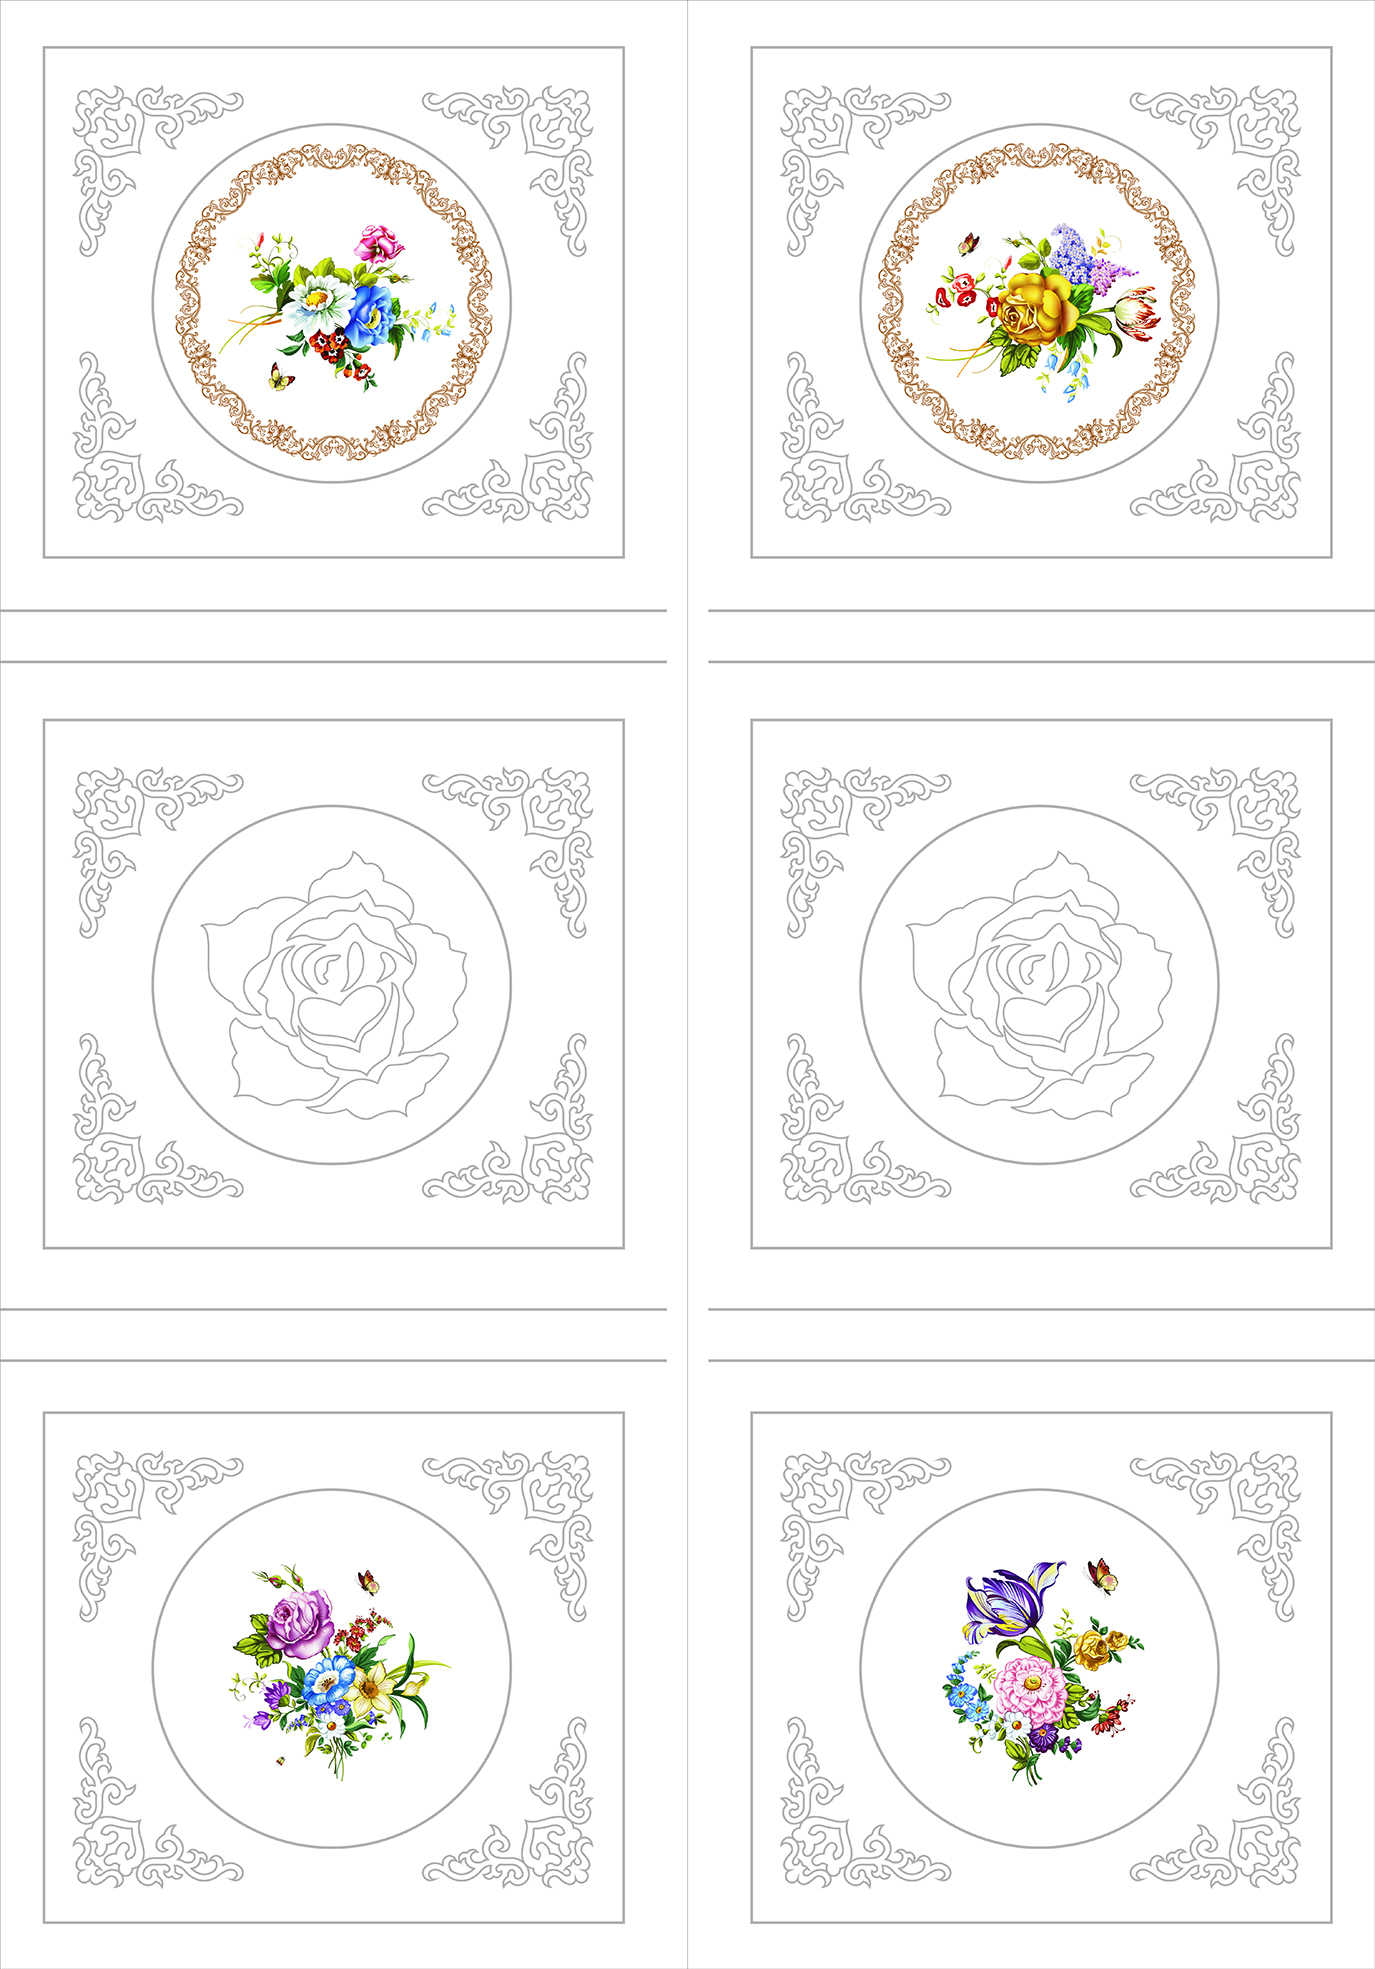 玫瑰花卉 耐刮板,肤感打印,艺术玻璃,UV打印,平开衣柜门,整体衣柜,高光系列 玫瑰花卉 圆圈 玫瑰 手绘 矢量 线描